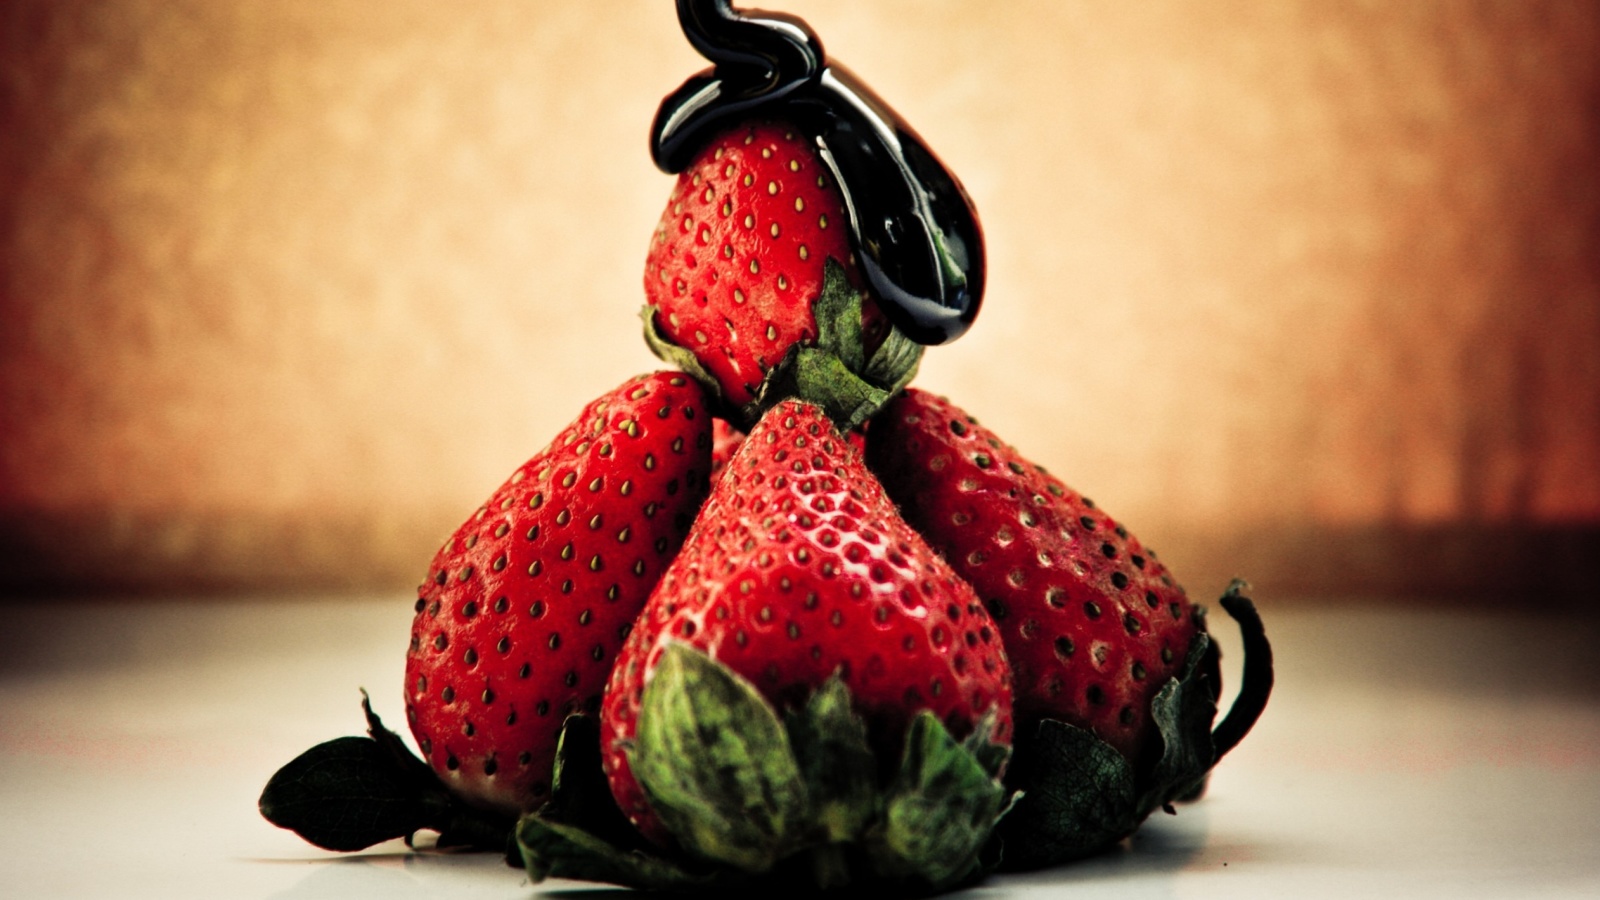 Strawberries with chocolate screenshot #1 1600x900